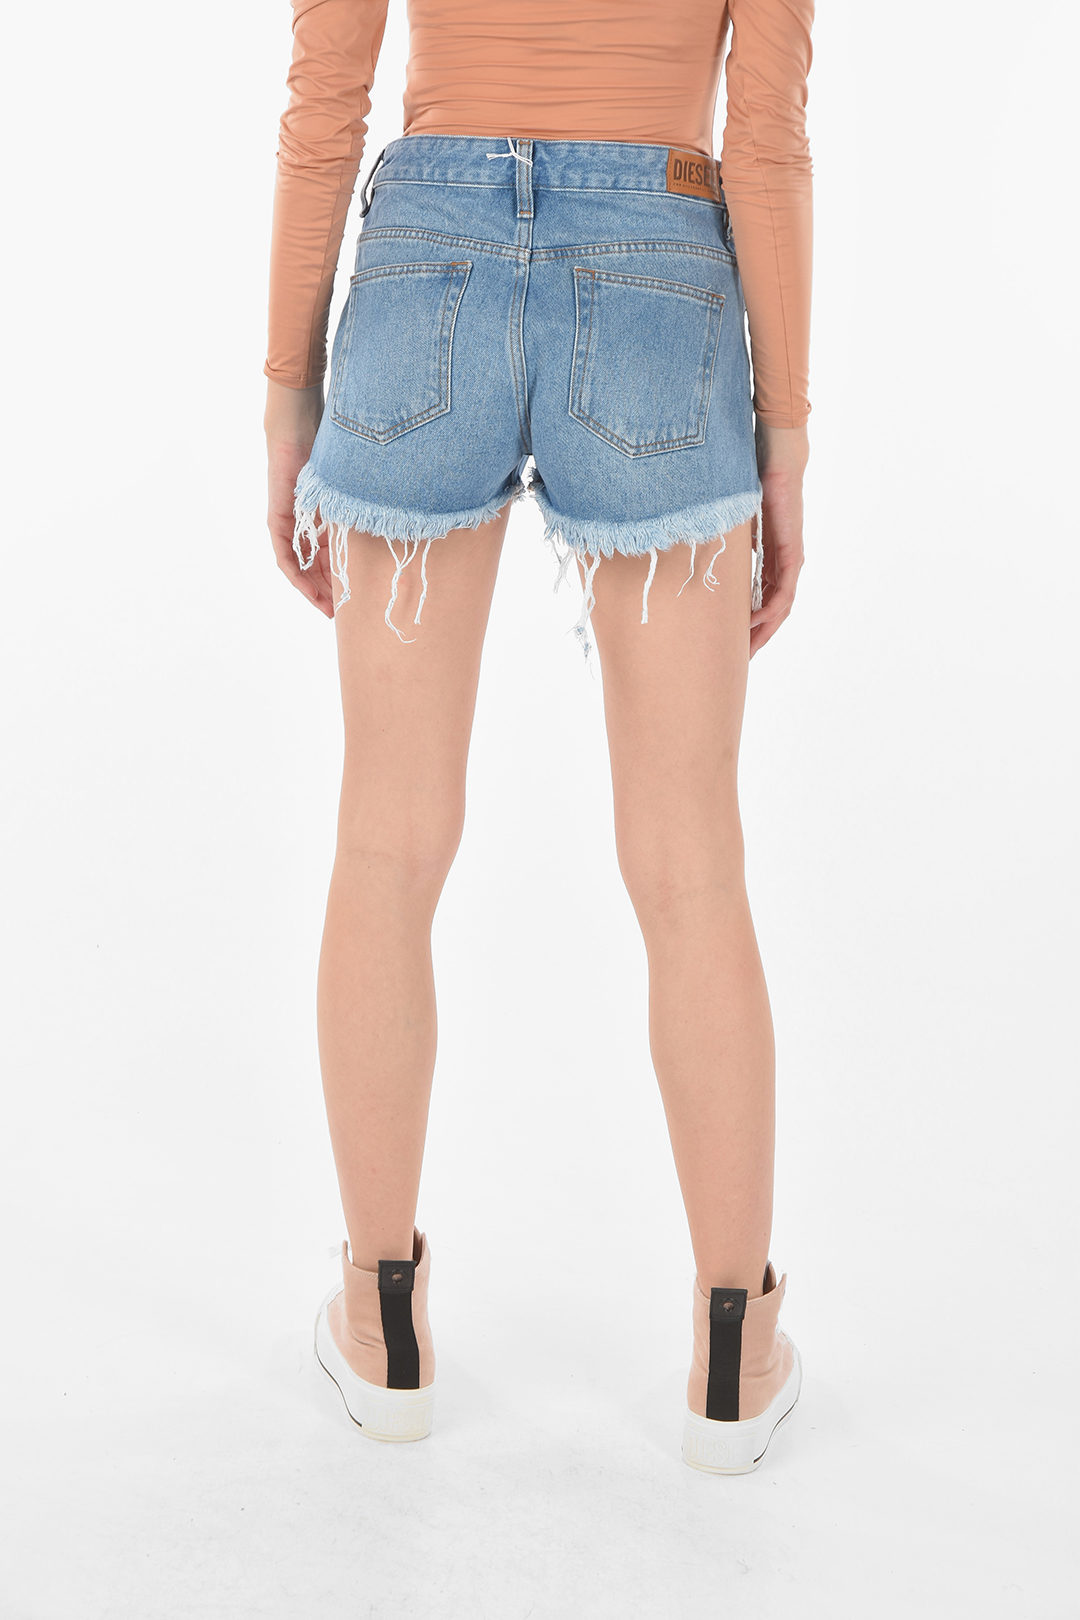 CASPAR Womens Jeans Shorts / Hot Pants with Decorative Zipper Applications  - HTP001 | Caspar Fashion